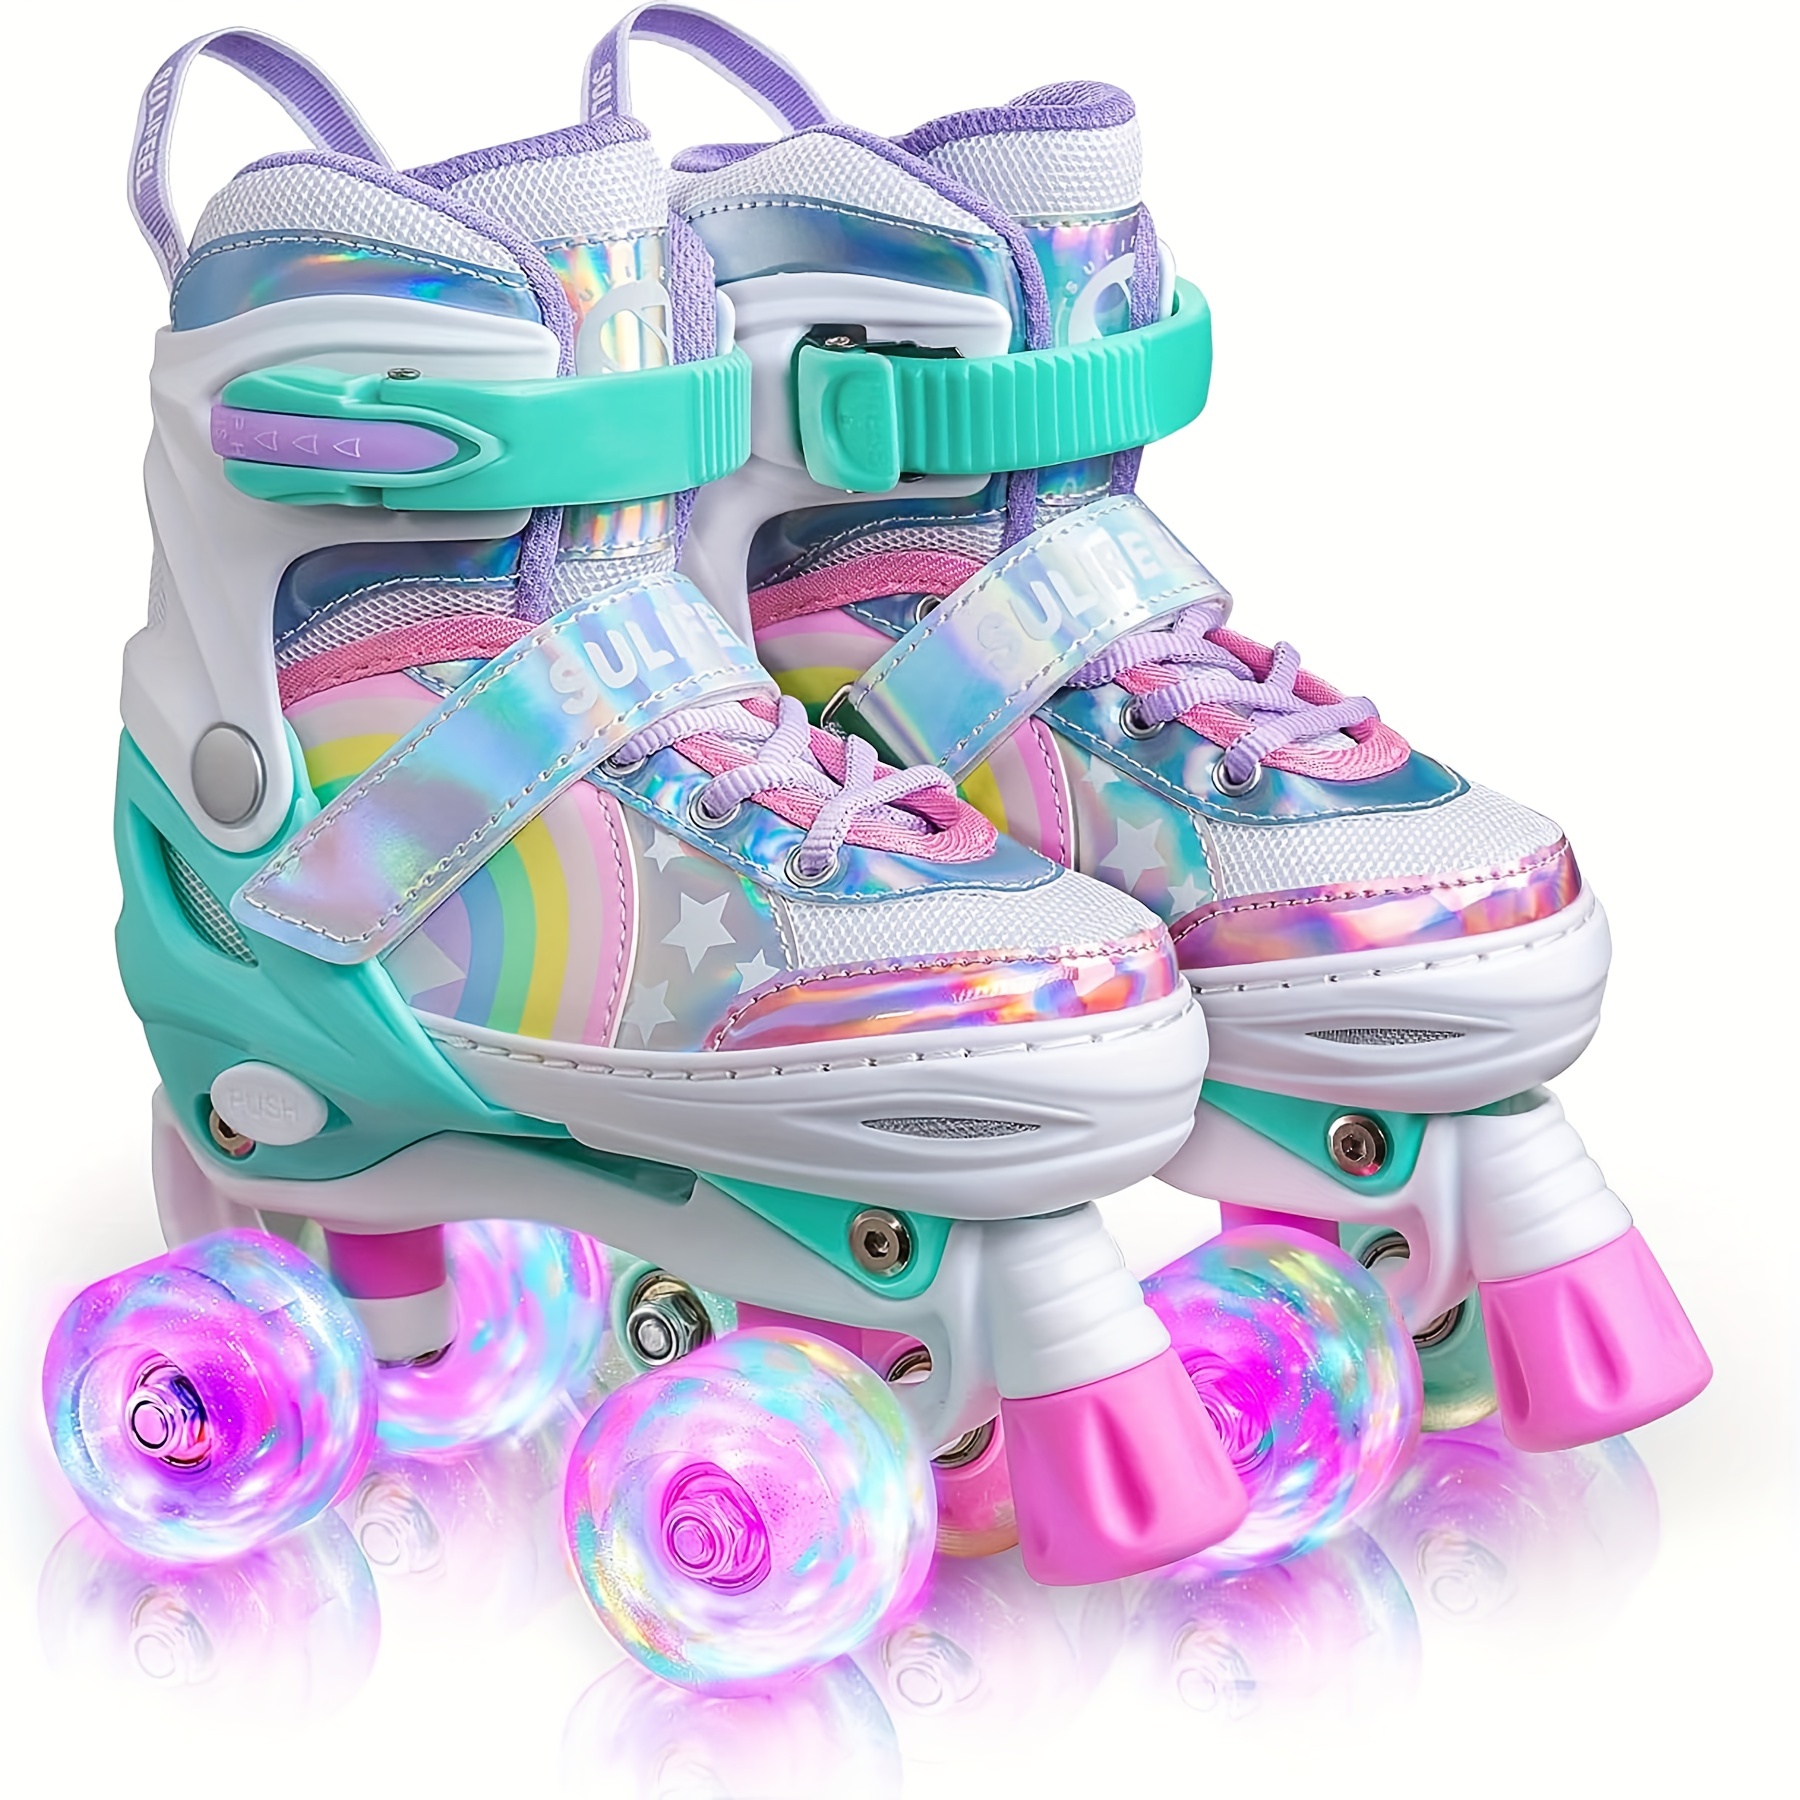 Patines en línea para niños, patines ajustables con 4 ruedas de poliuretano  iluminadoras,Patines interiores para niños y niñas principiantes